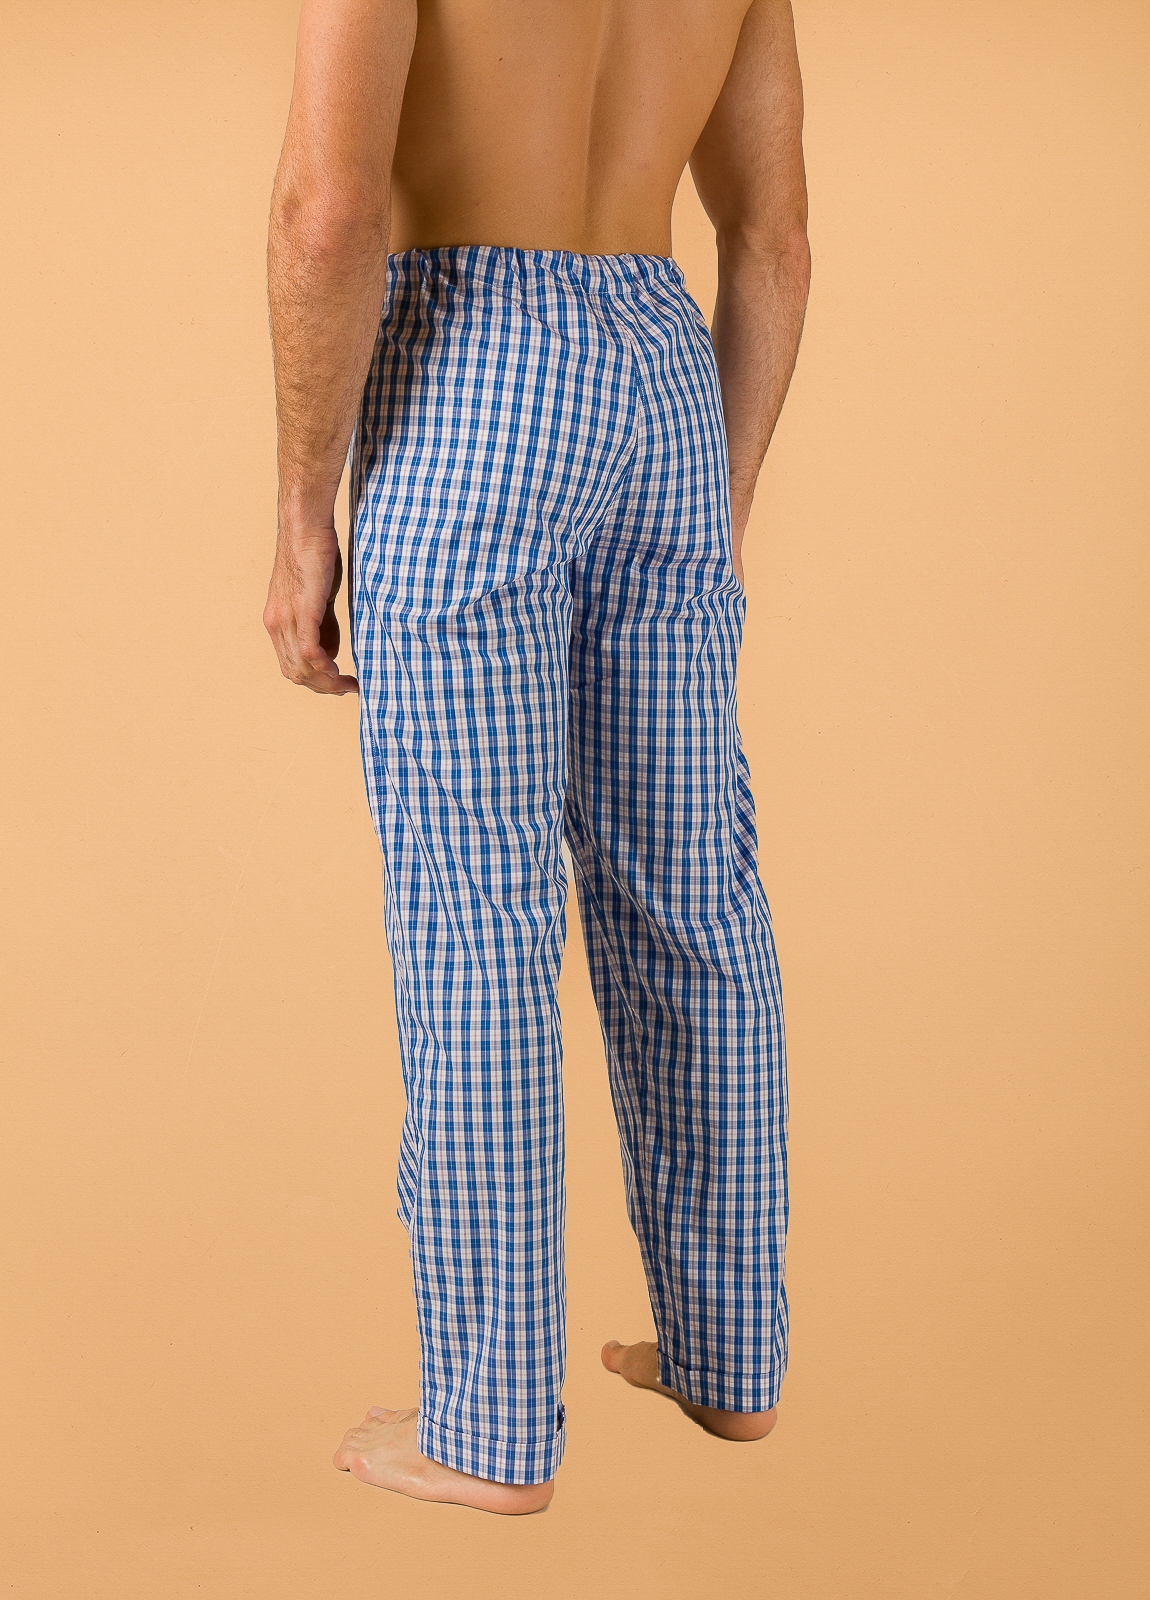 Pantalón largo de Pijama FUREST COLECCIÓN cuadros azul con funda incluida - Ítem1